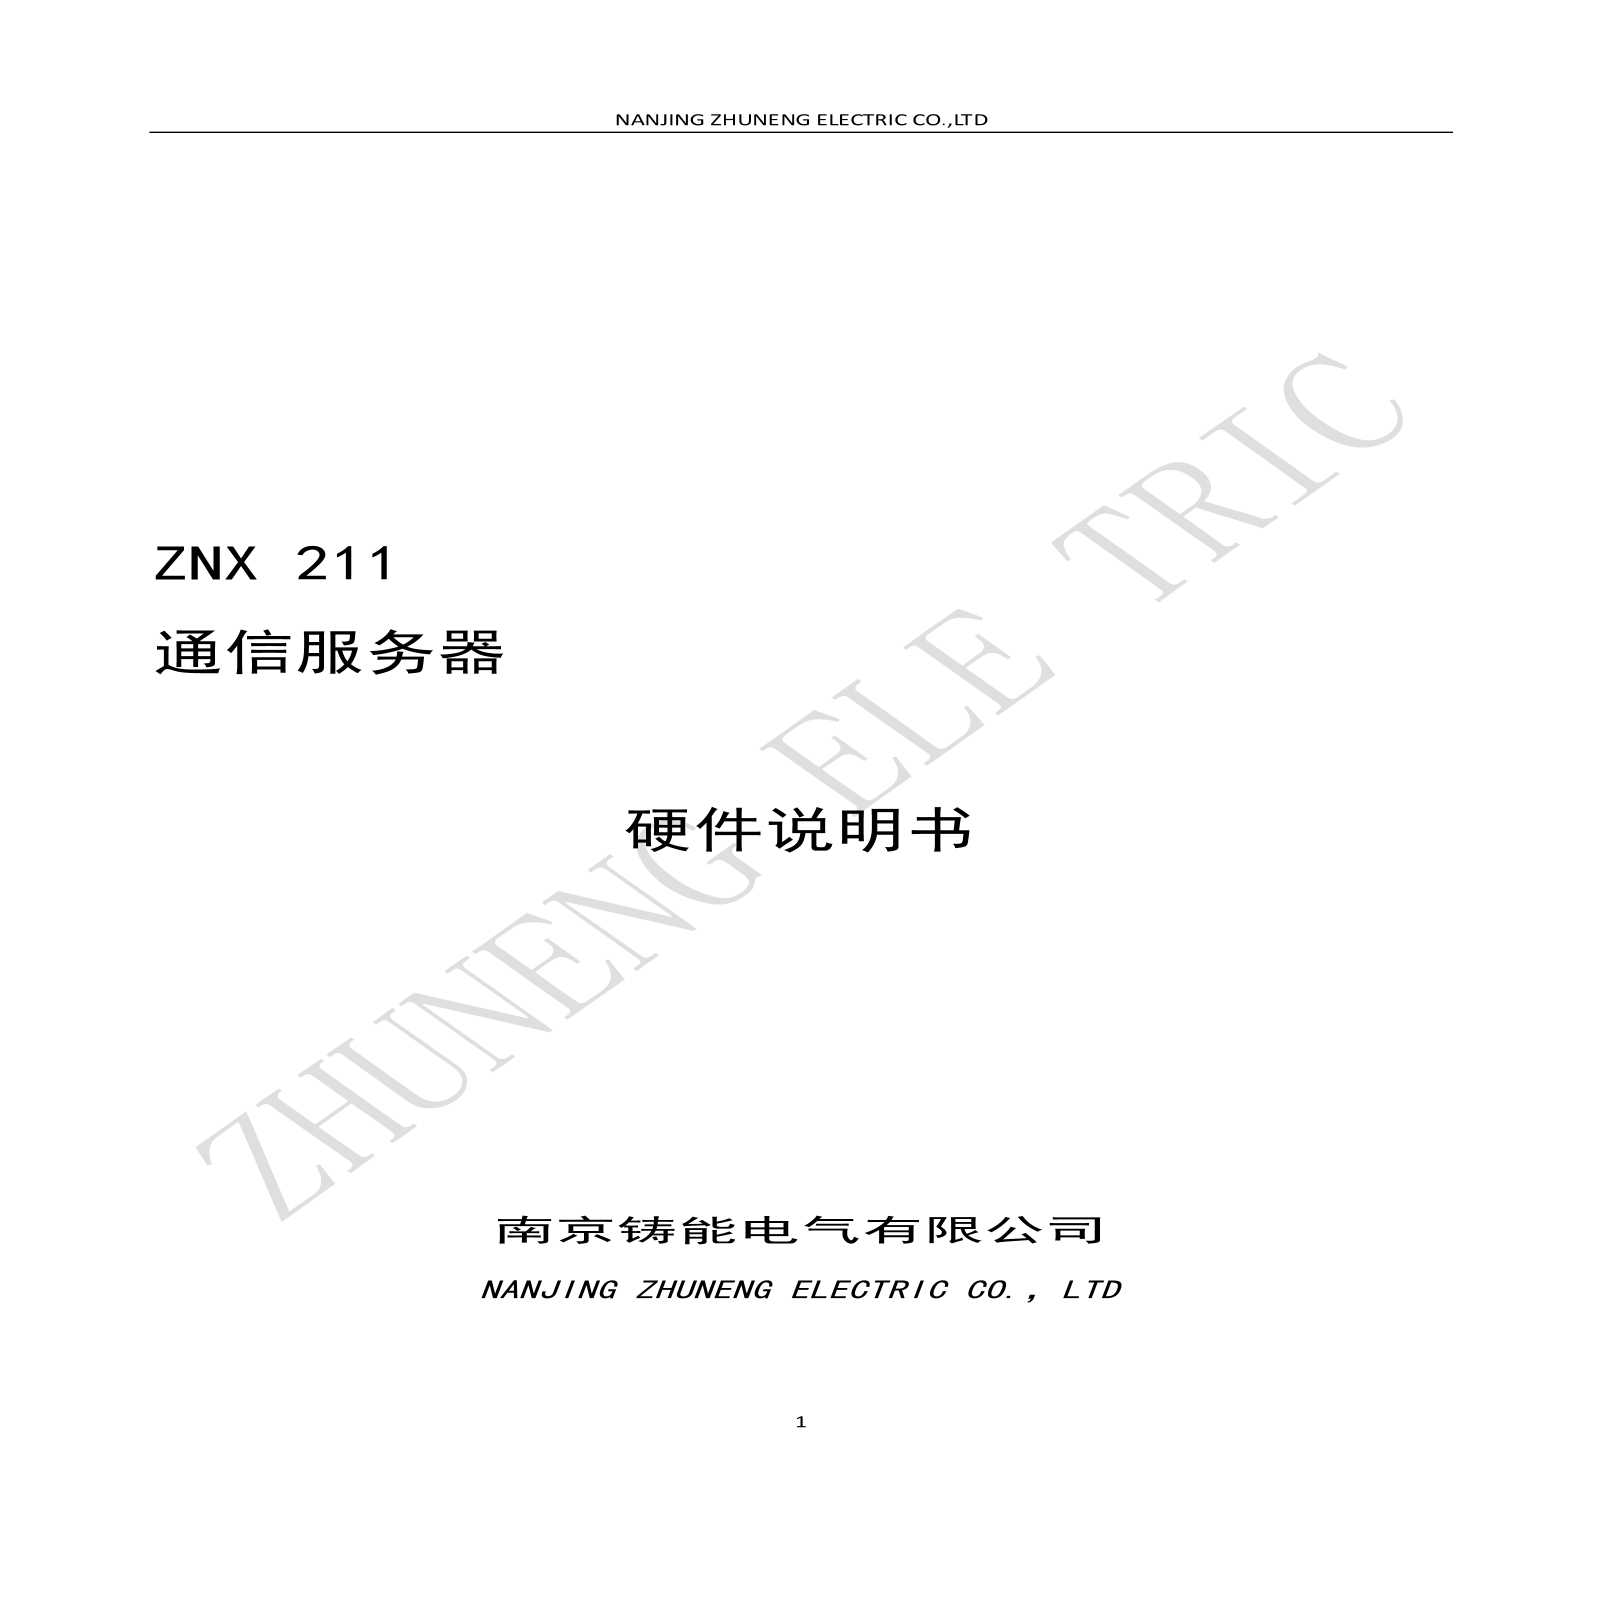 ZNX 211通信服務器硬件說明書